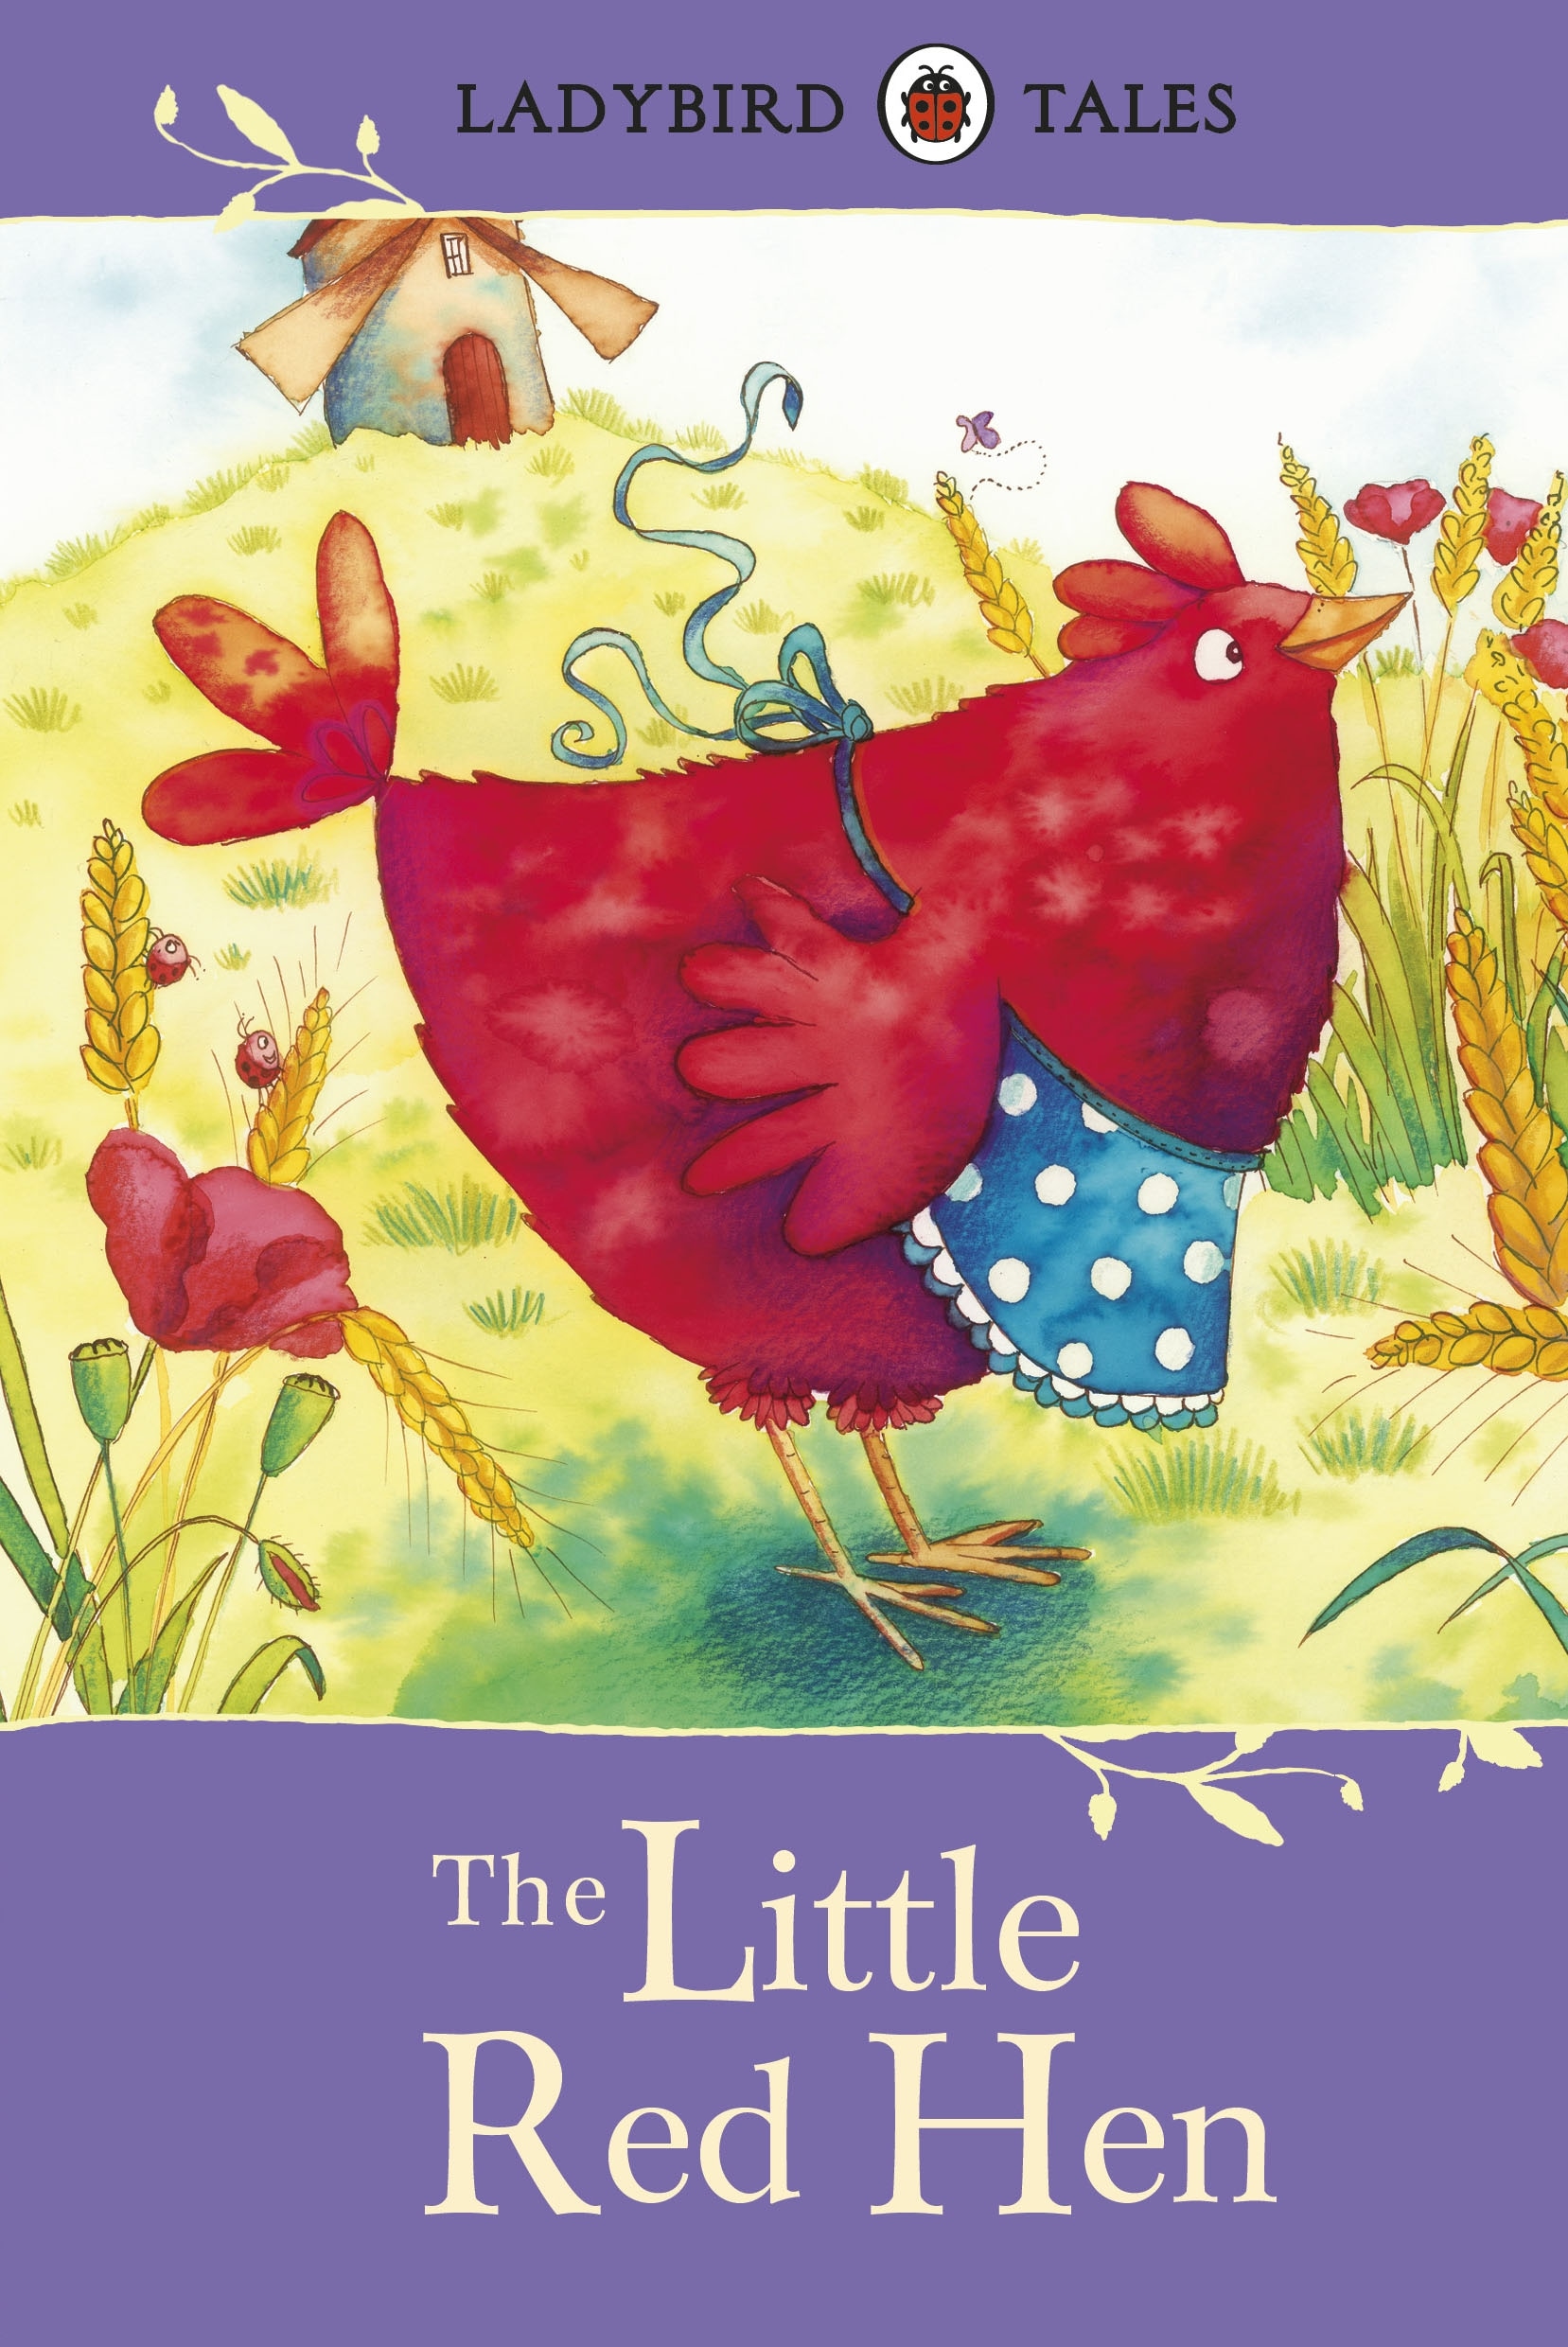 Book “Ladybird Tales: The Little Red Hen” — June 6, 2013